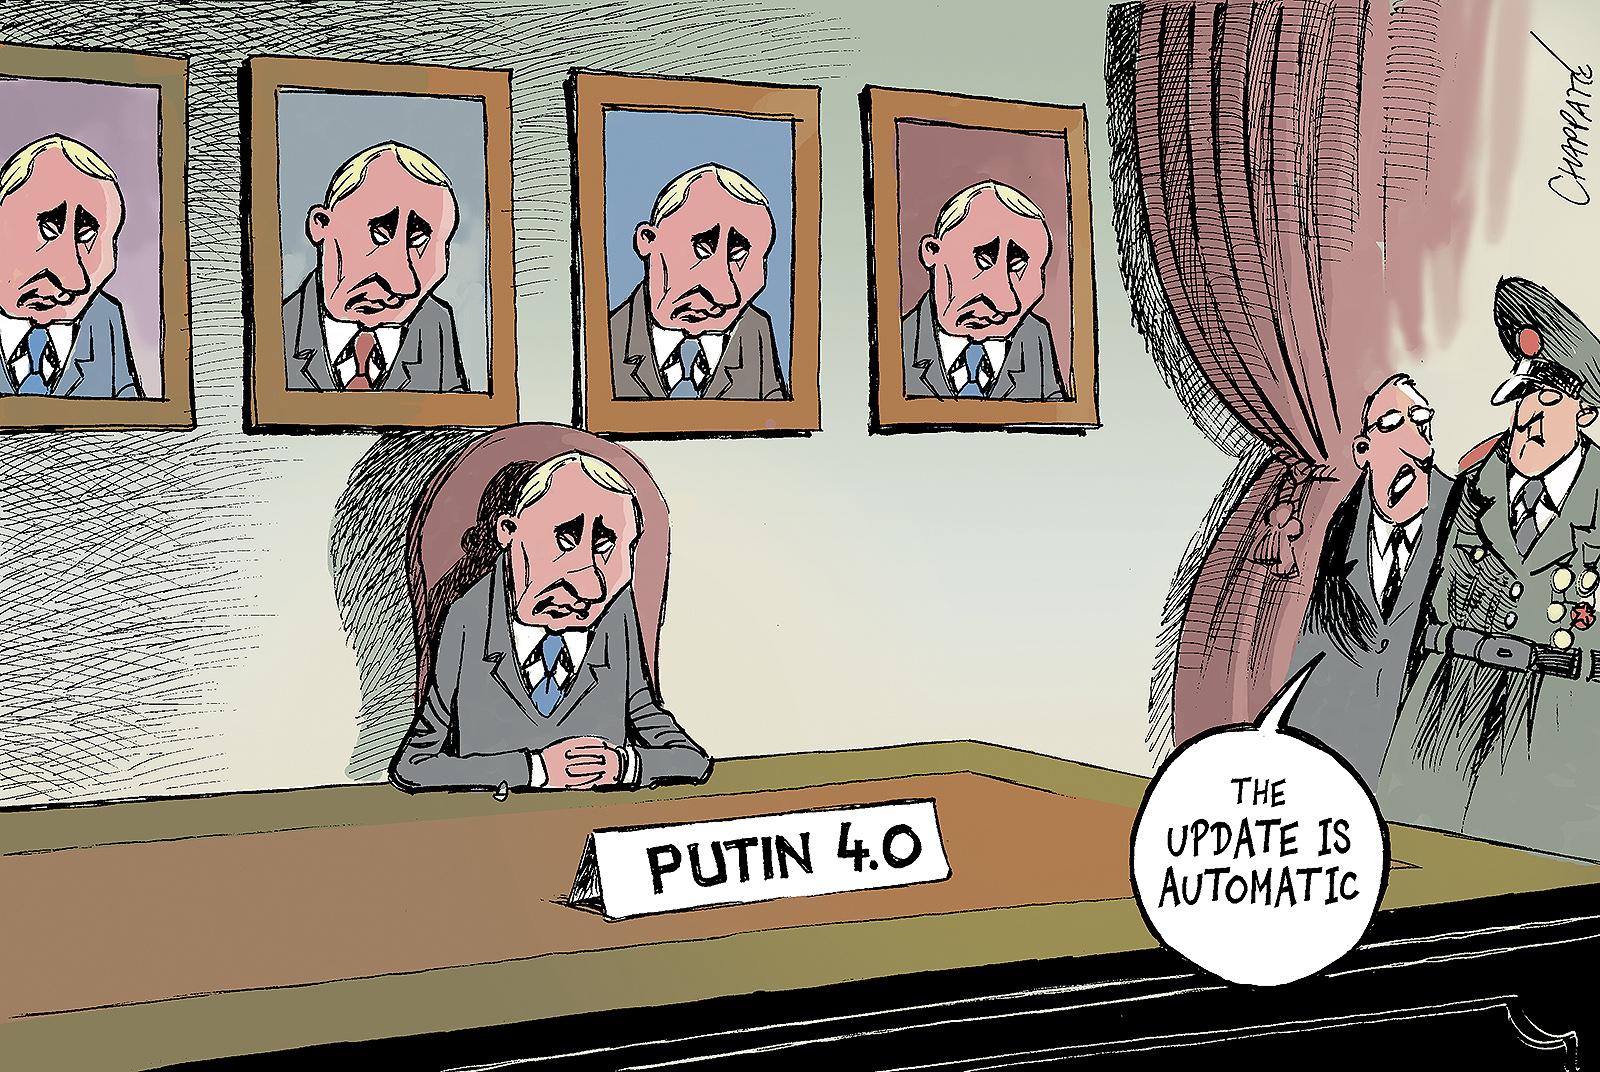 Putin begins his 4th term